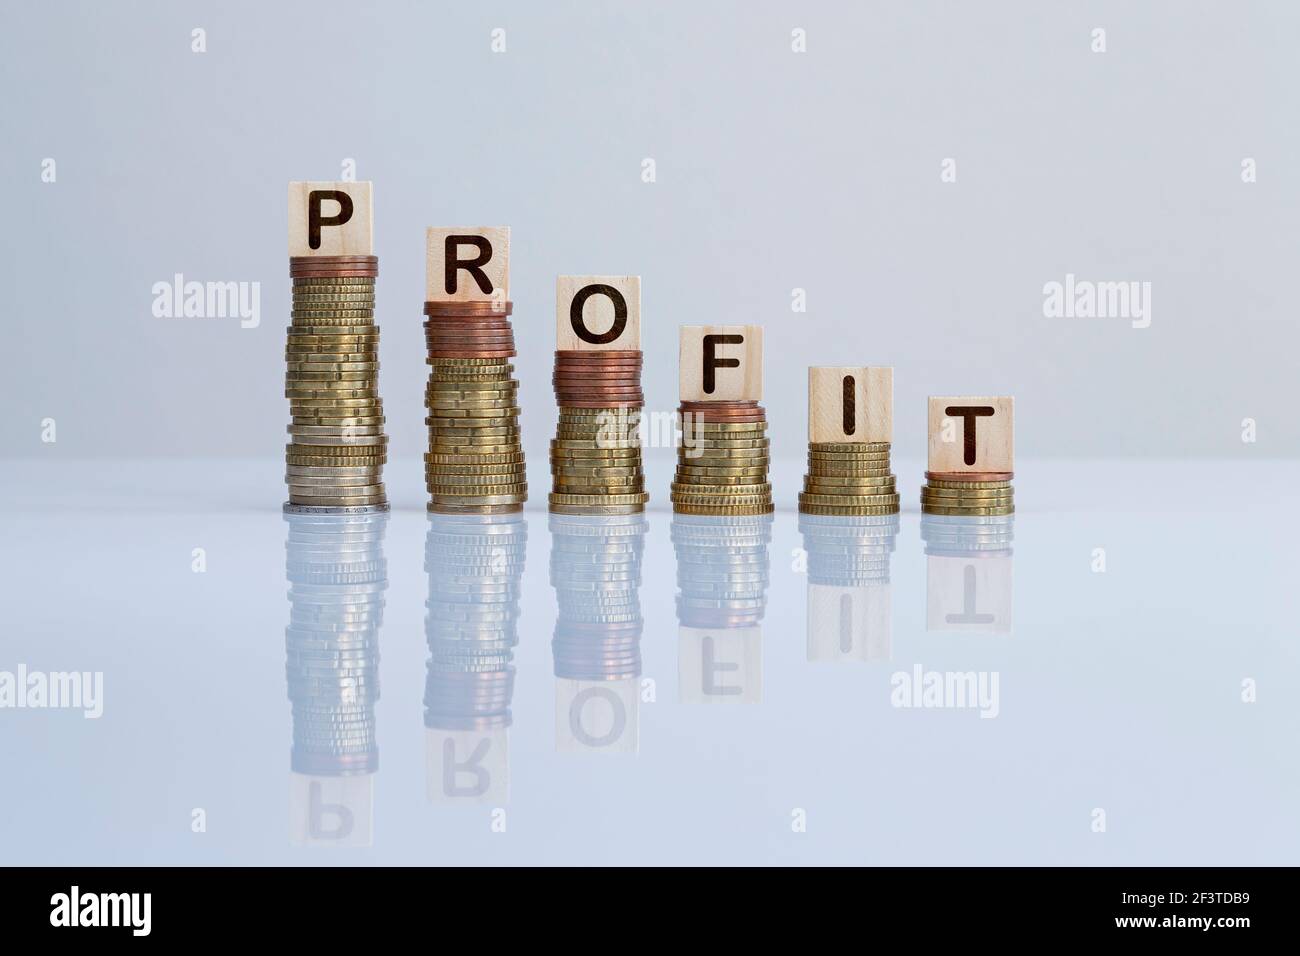 Wort „PROFIT“ auf Holzblöcken auf absteigenden Münzstapeln. Konzeptfoto von Geldverlust, Wirtschaftskrise, Rezession und finanzieller Minderung. Stockfoto